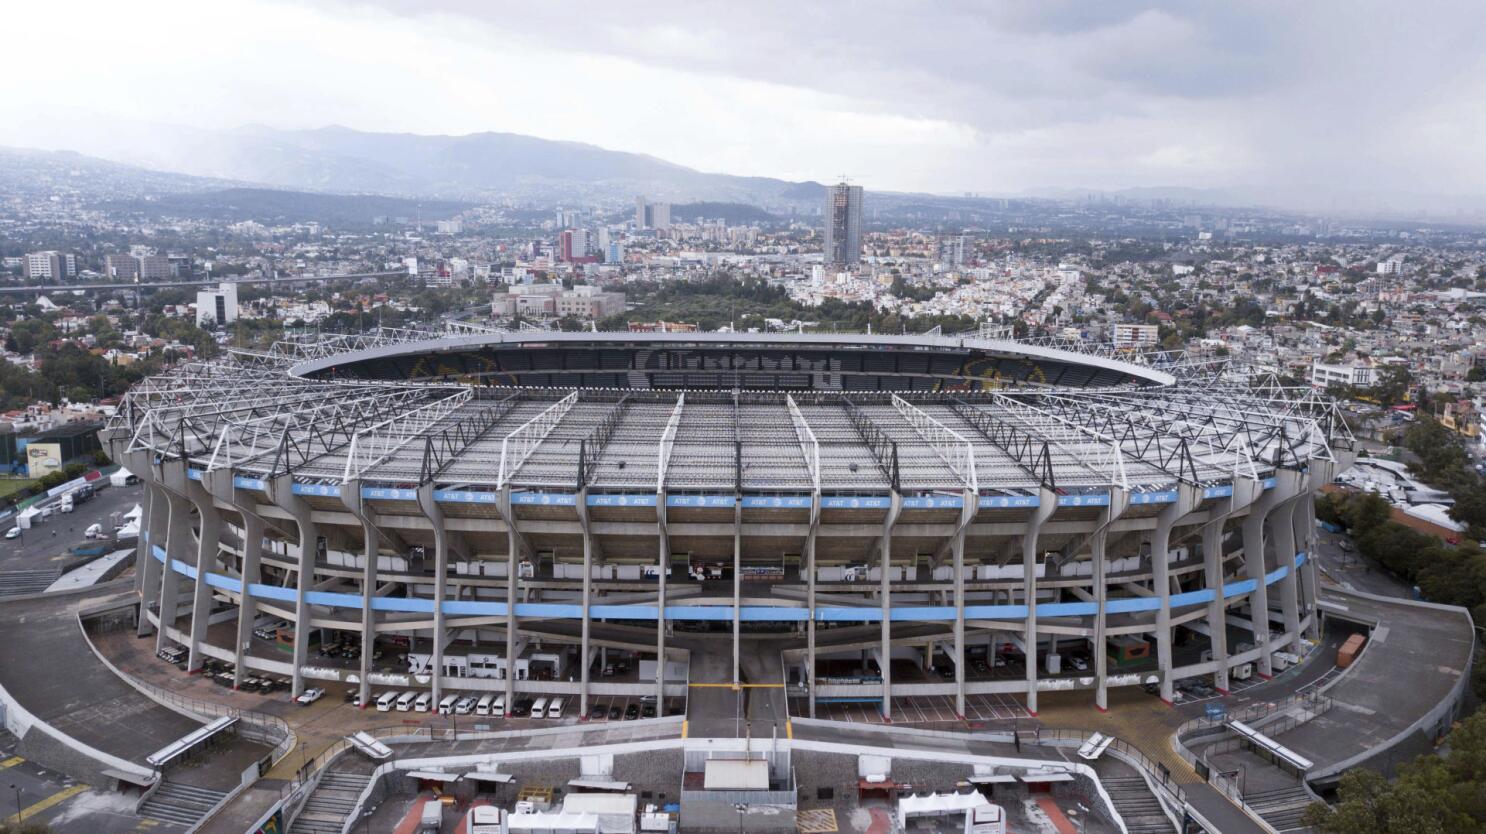 SoFi Stadium tendrá estos cambios antes del Mundial 2026 - Los Angeles Times